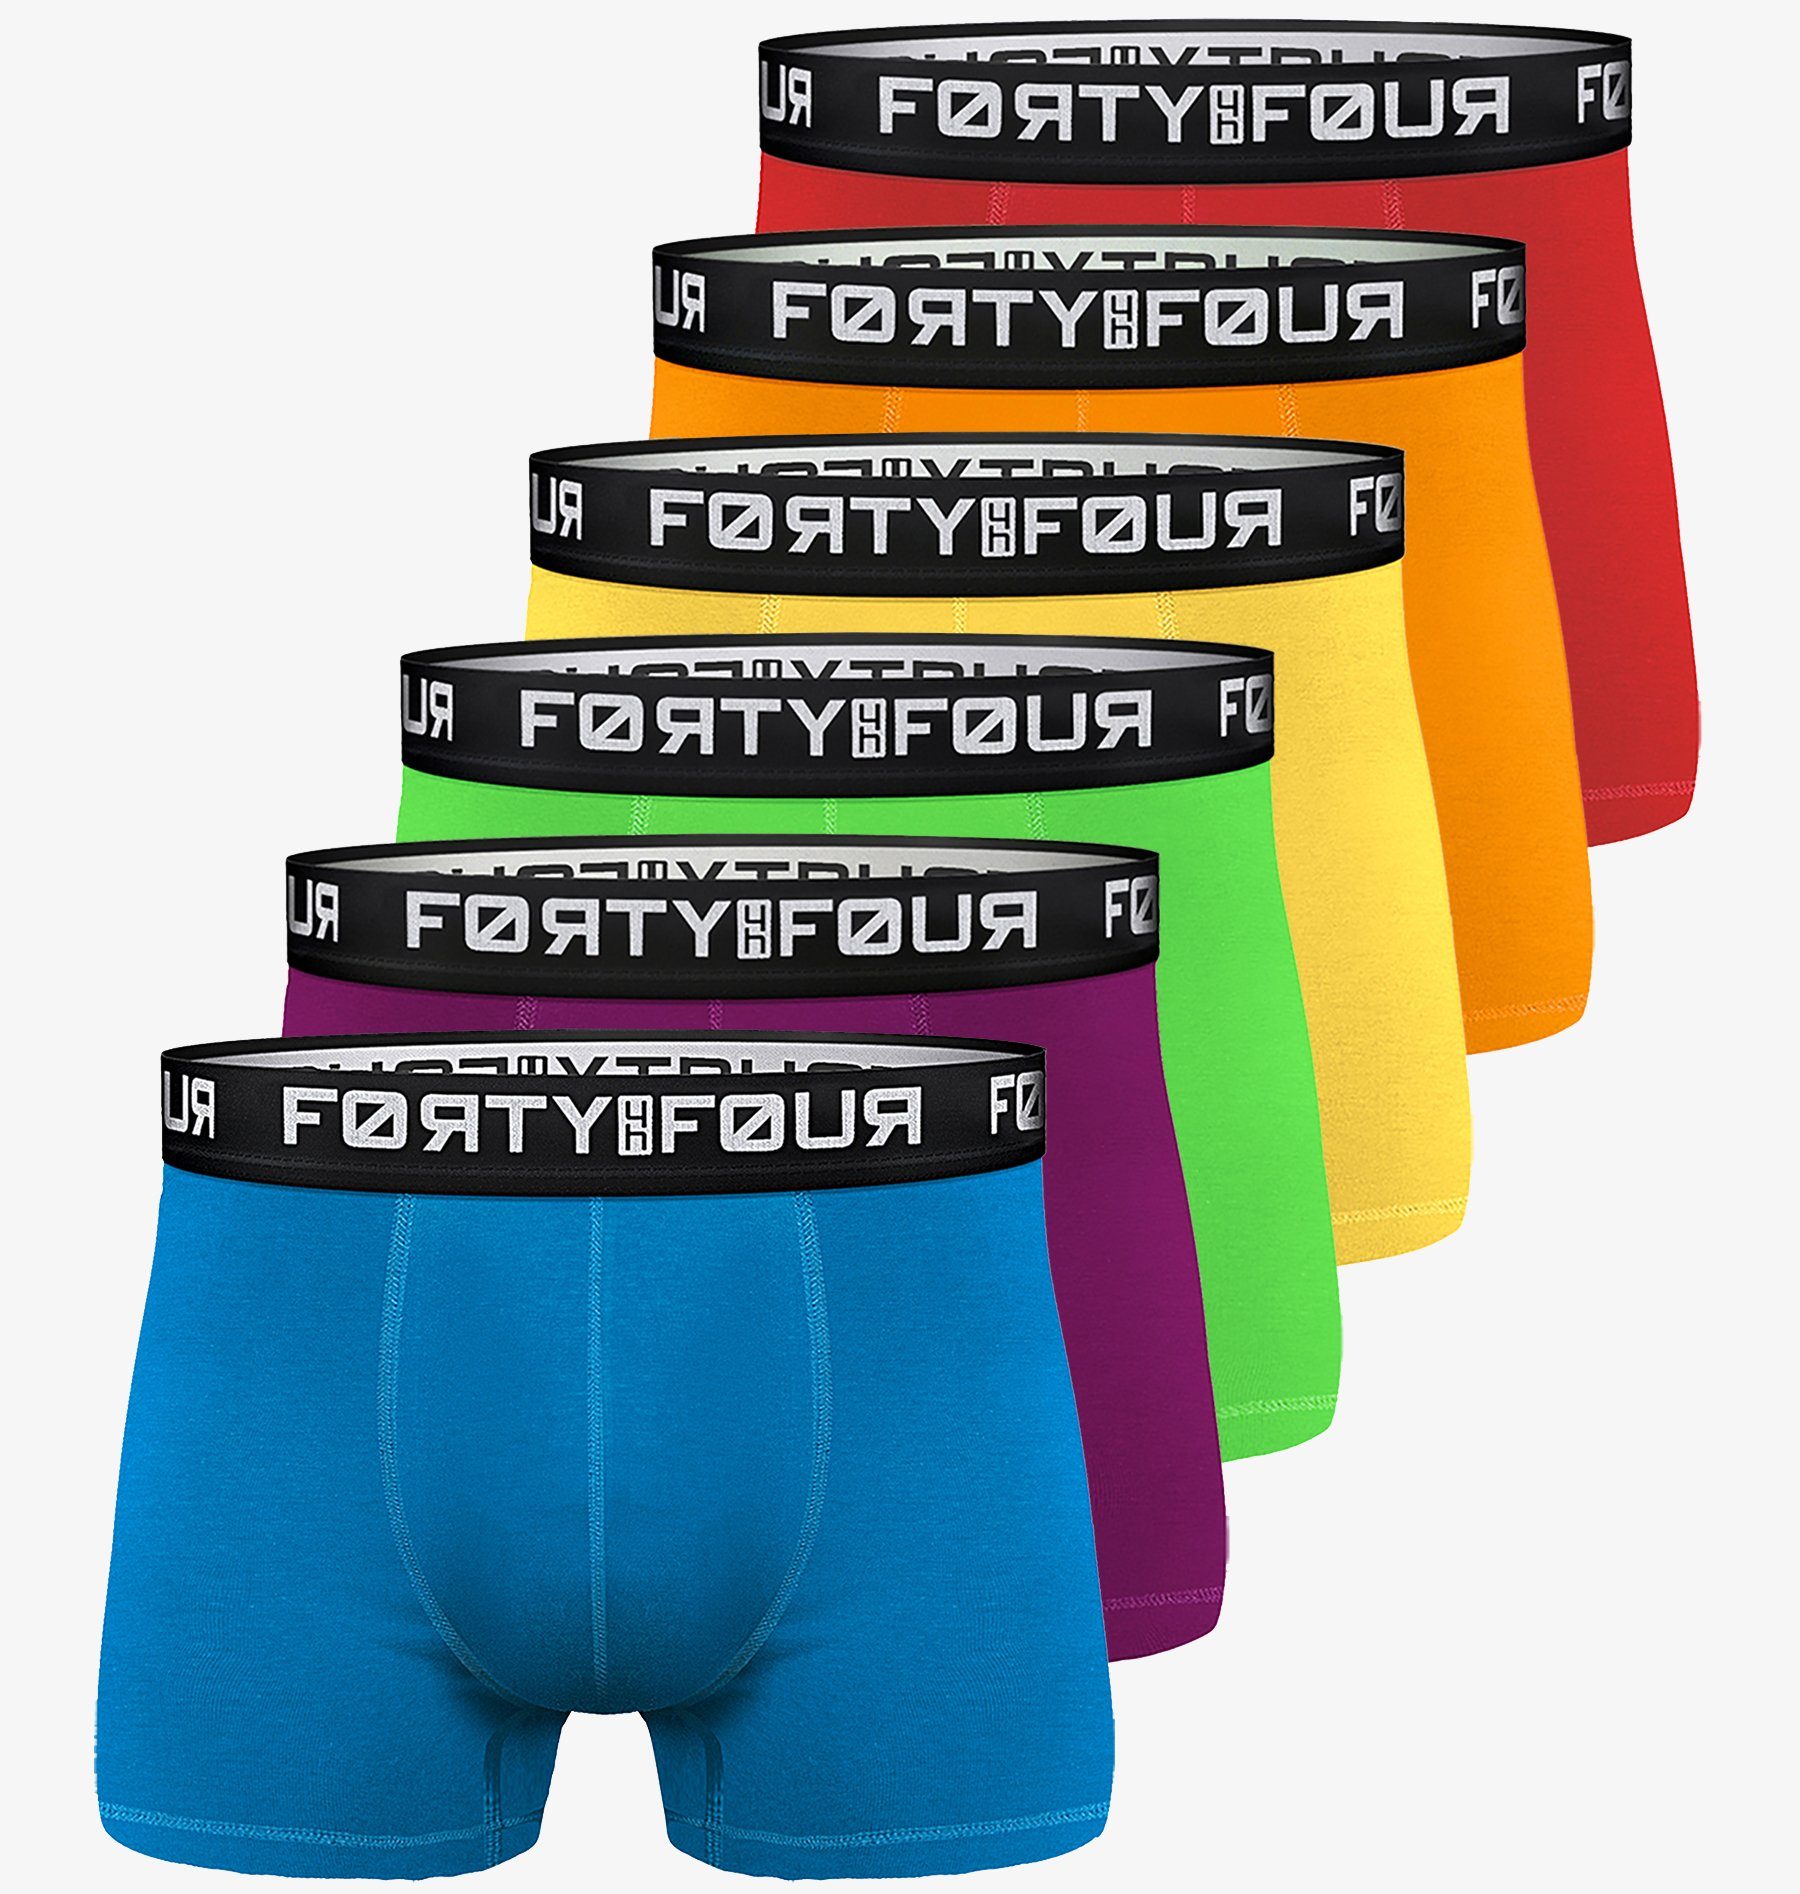 6er FortyFour Pack) (Vorteilspack, Baumwolle Boxershorts Qualität Passform Männer Premium Herren - Unterhosen 7XL perfekte 706c-bunt S